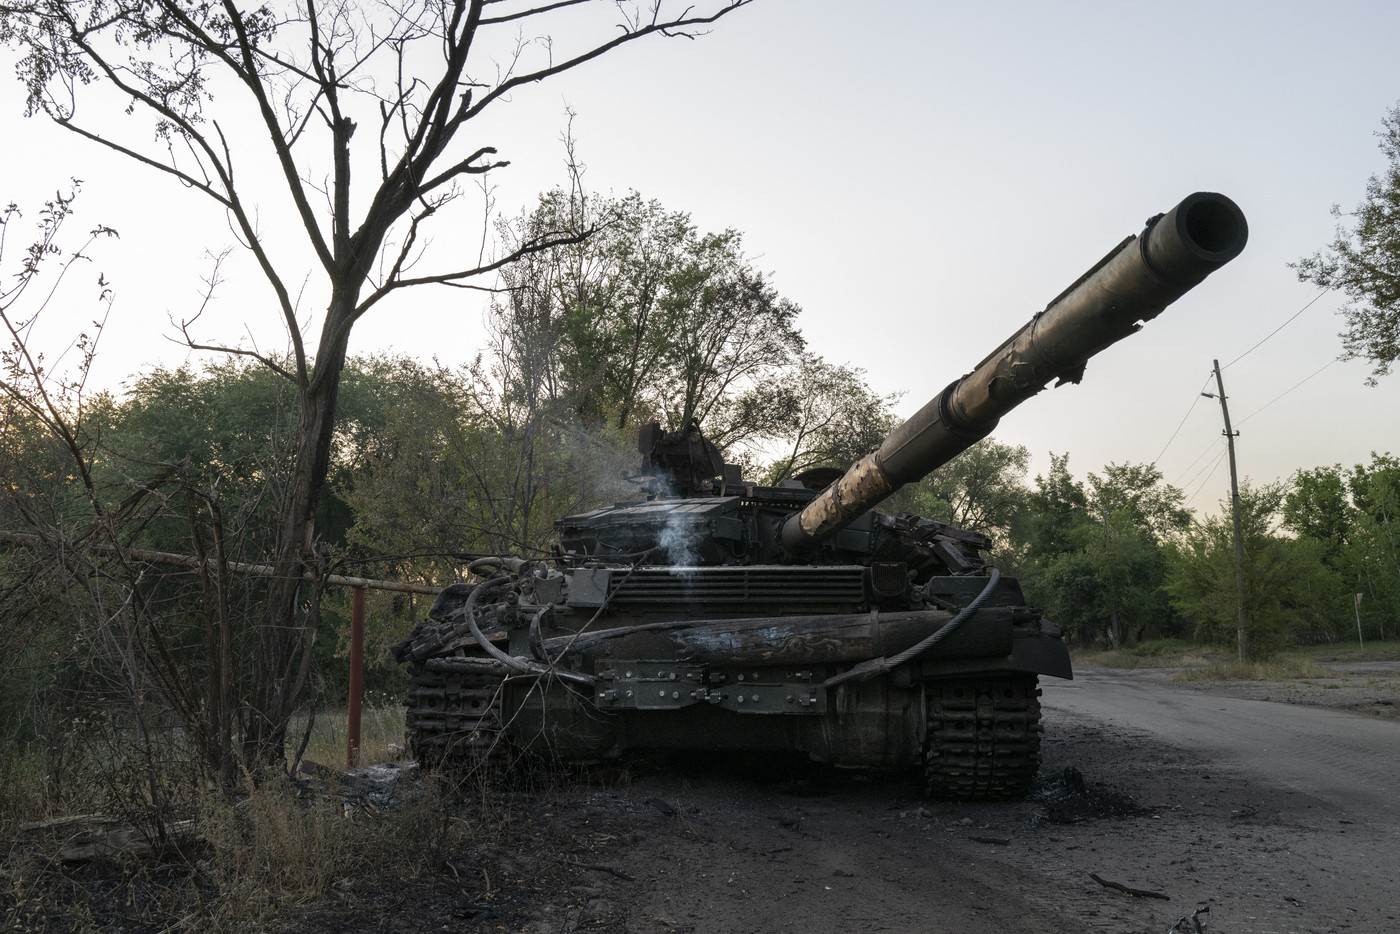   bitka počinje u Donbasu 